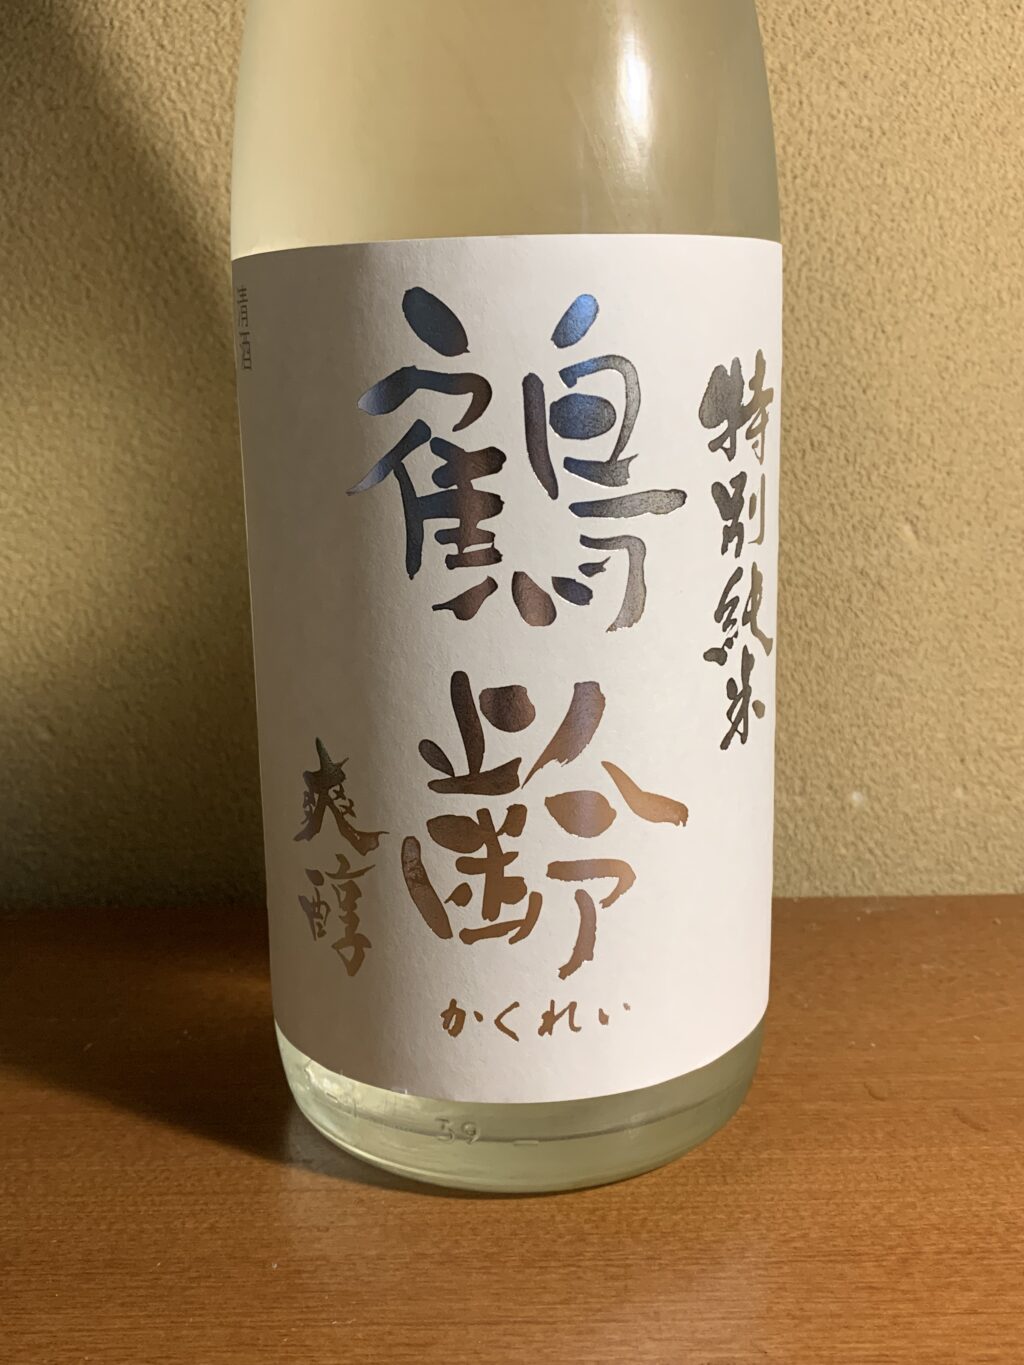 新潟塩沢の日本酒『鶴齢 爽醇』は爽やかな酸味とほのかな甘み